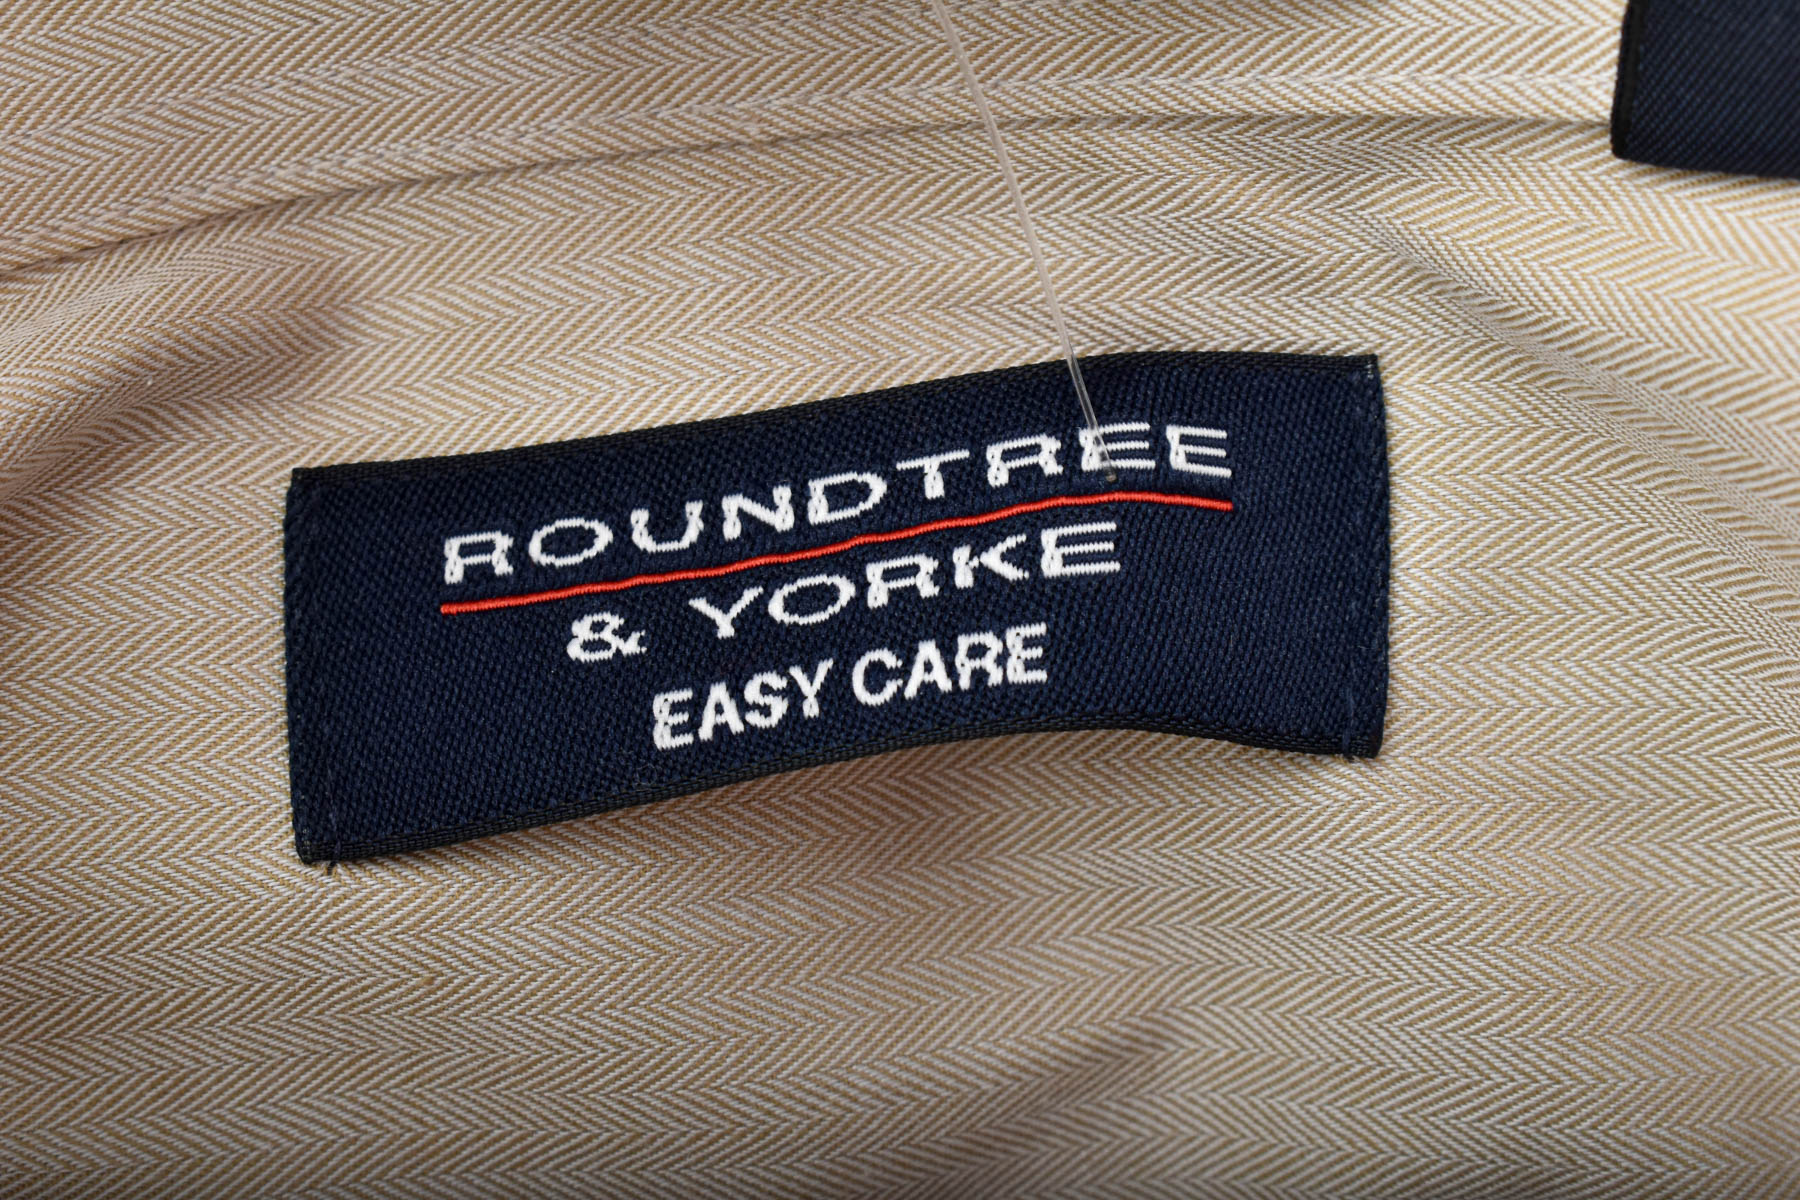 Ανδρικό πουκάμισο - Roundtree & Yorke - 2